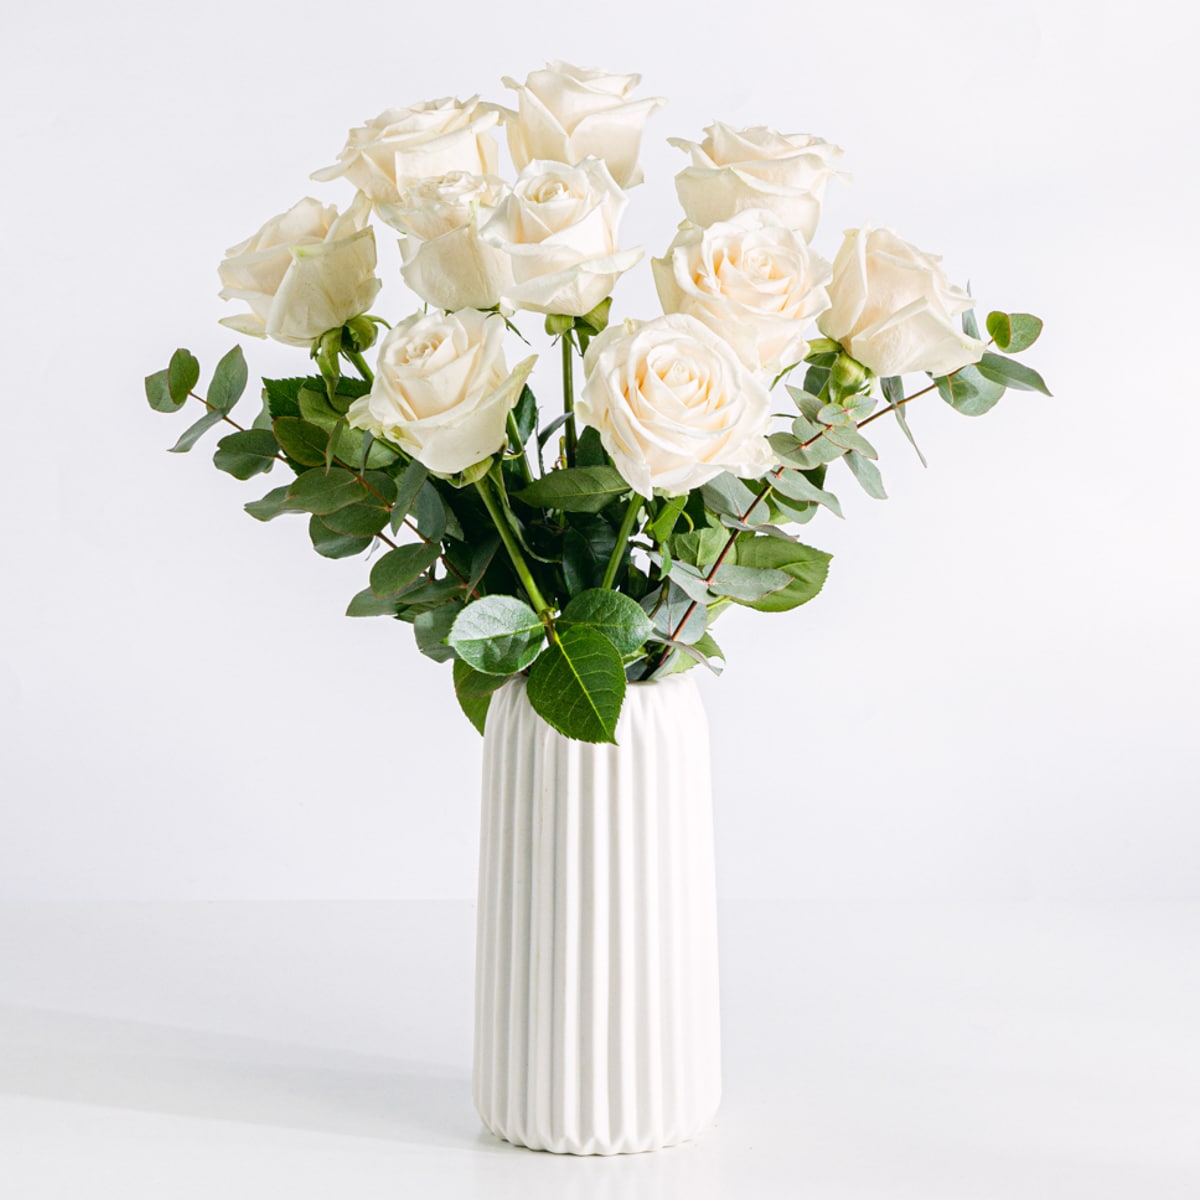 Blumenstrauß aus weißen Rosen in einer Vase